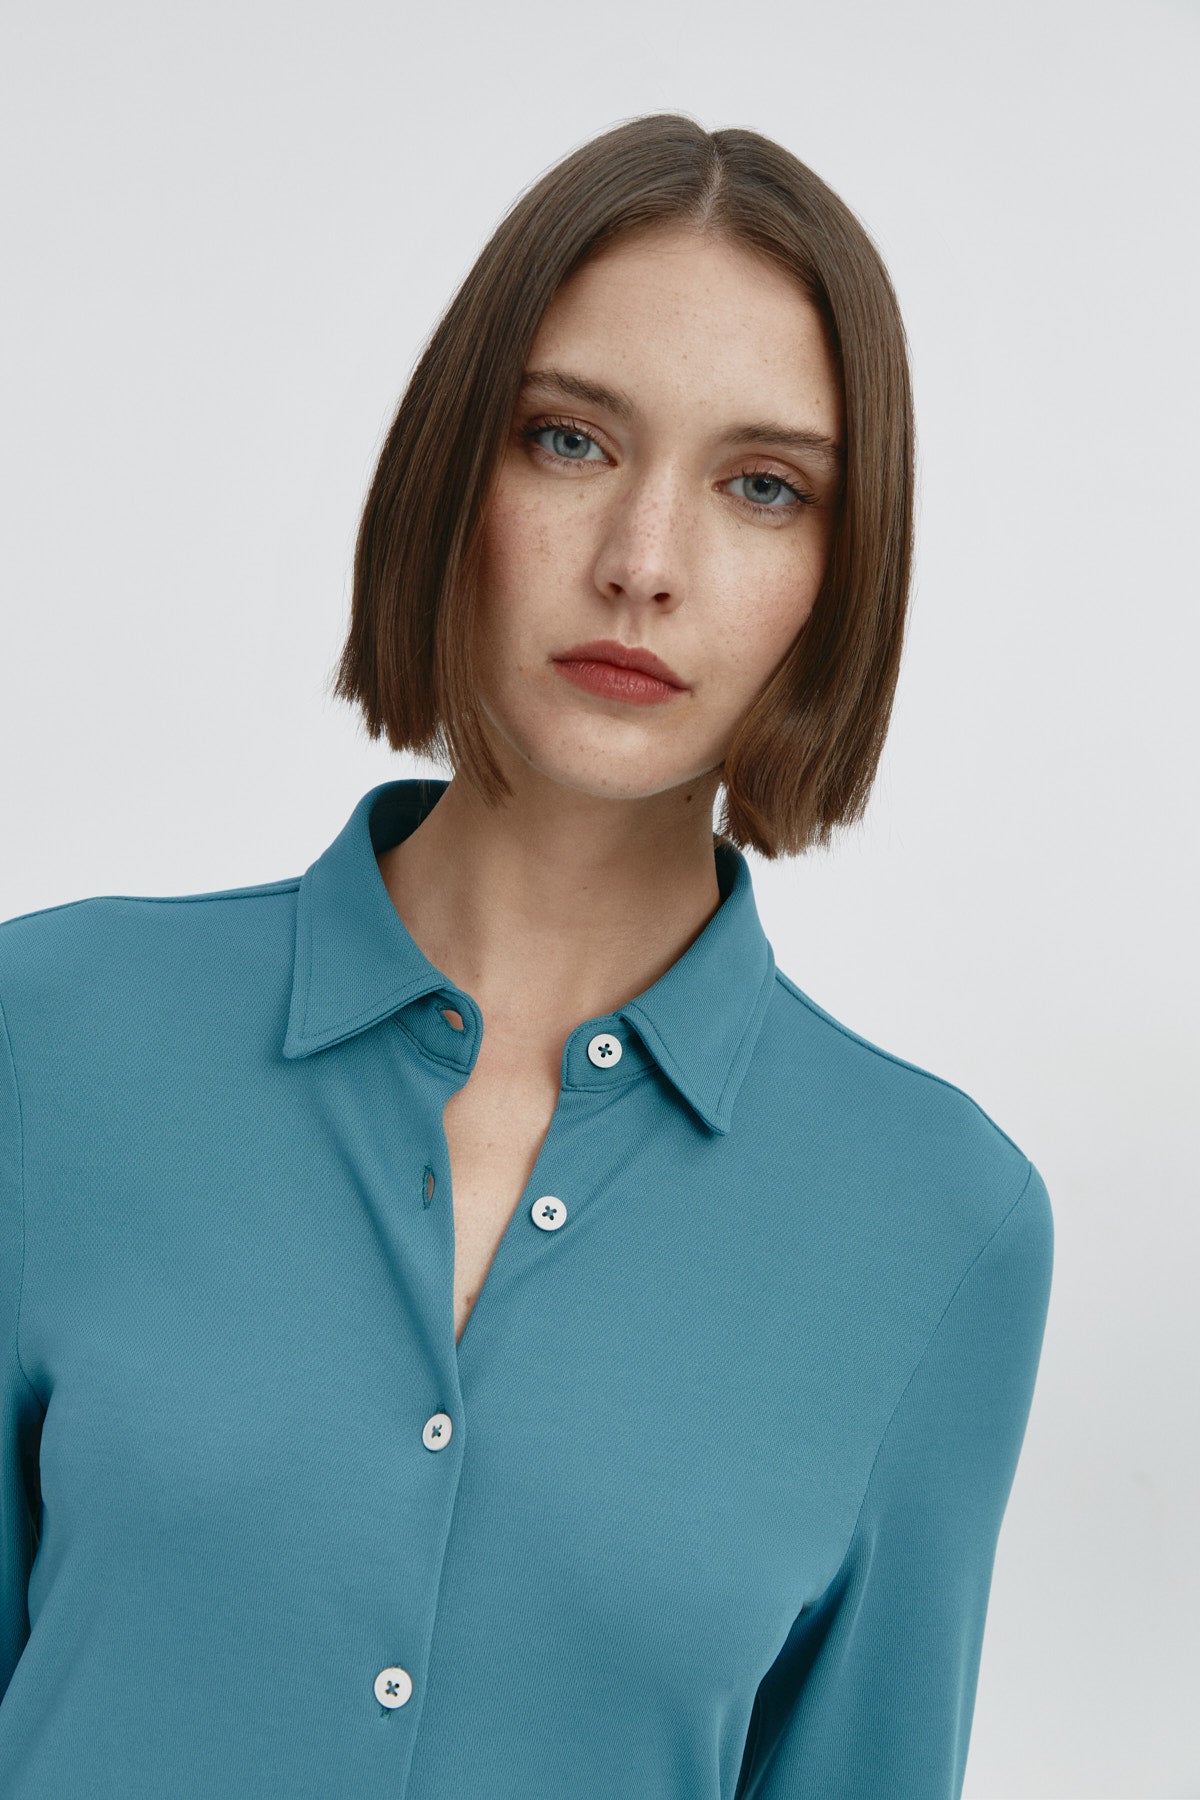 Camisa para mujer slim color azul neptuno, básica y versátil. Foto retrato